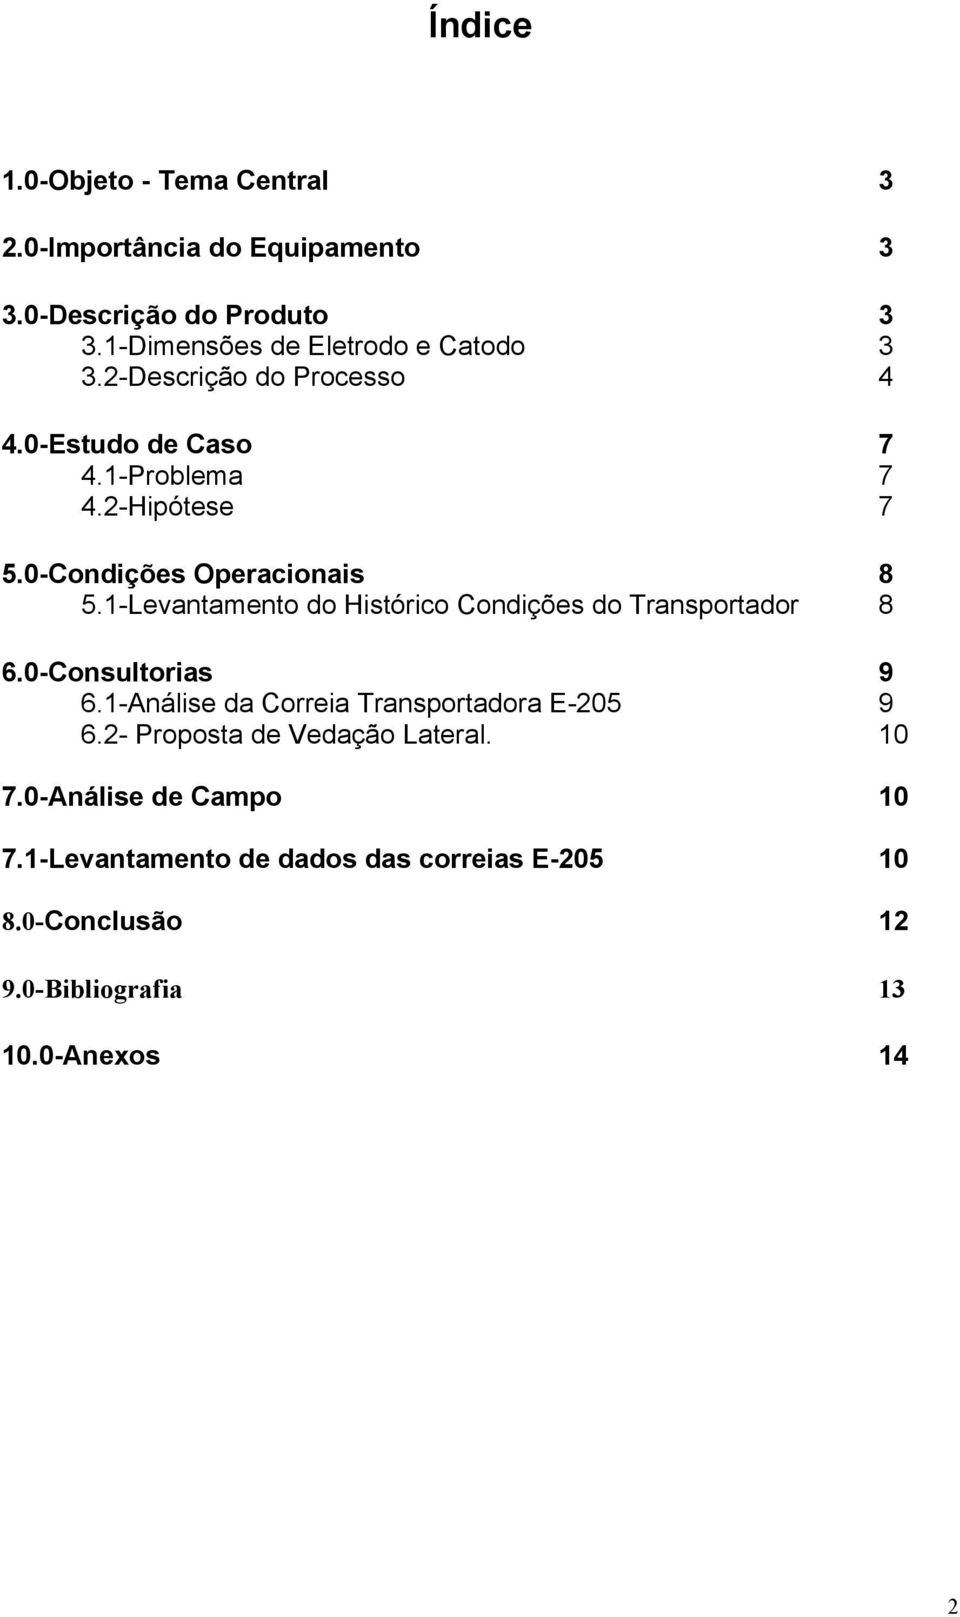 0-Condições Operacionais 8 5.1-Levantamento do Histórico Condições do Transportador 8 6.0-Consultorias 9 6.